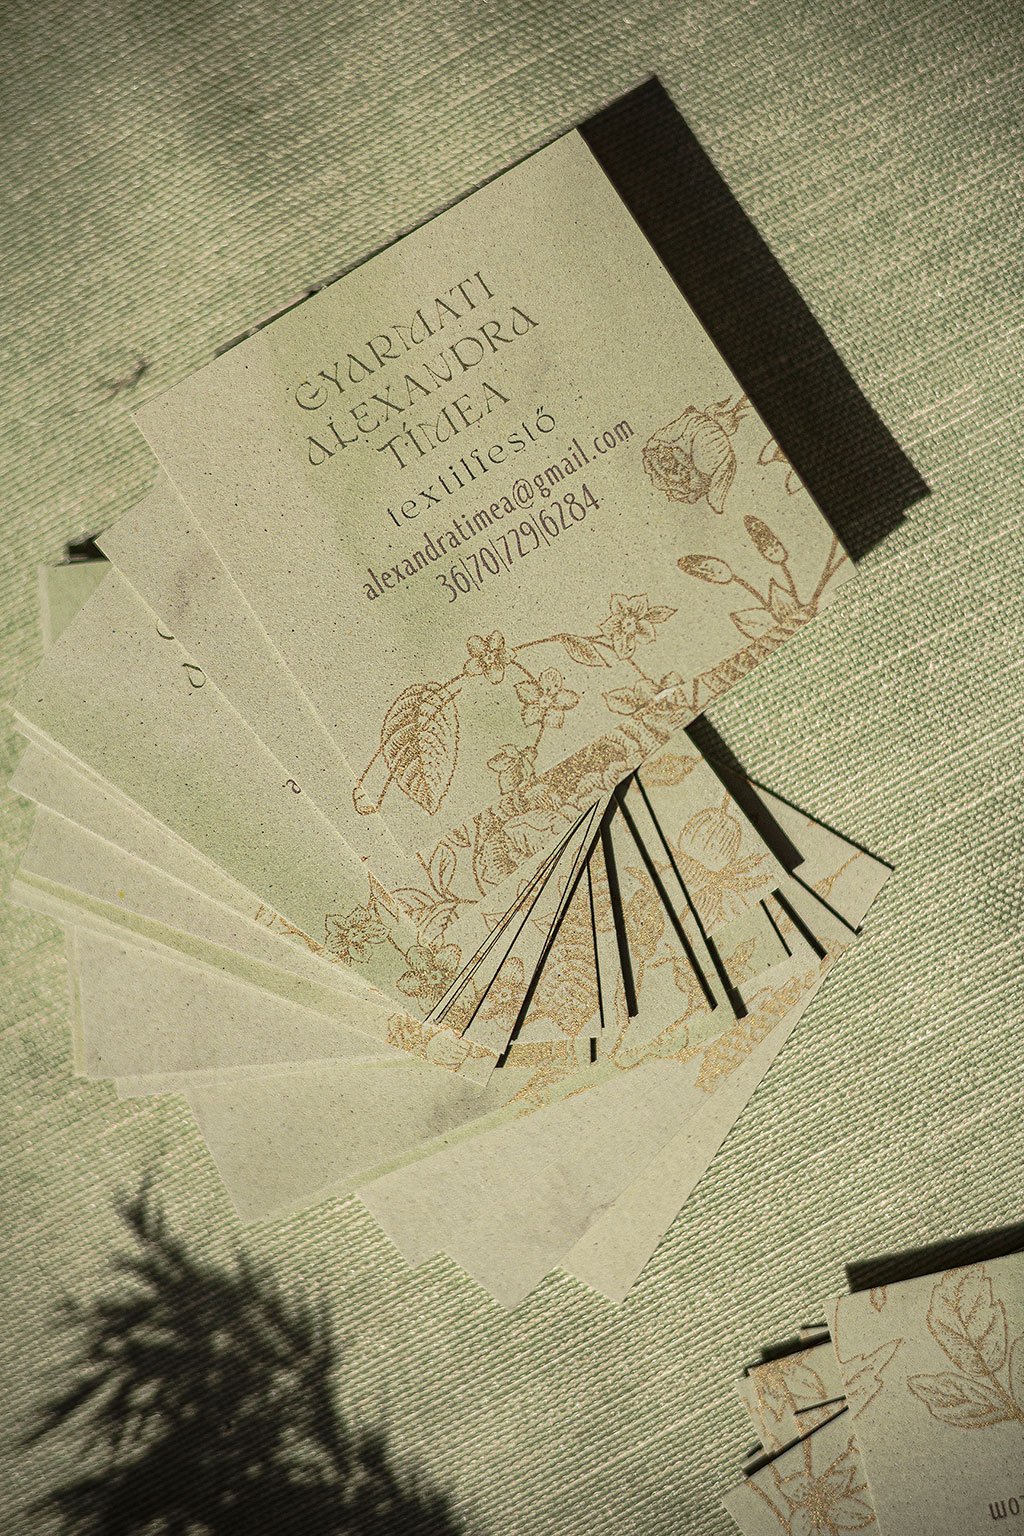 Négyzetes névjegy digitális arany nyomtatással kétféle öko-papírból két rétegben kasírozva 35 különböző virág grafikával, pasztell zöld és kakaó kartonokból